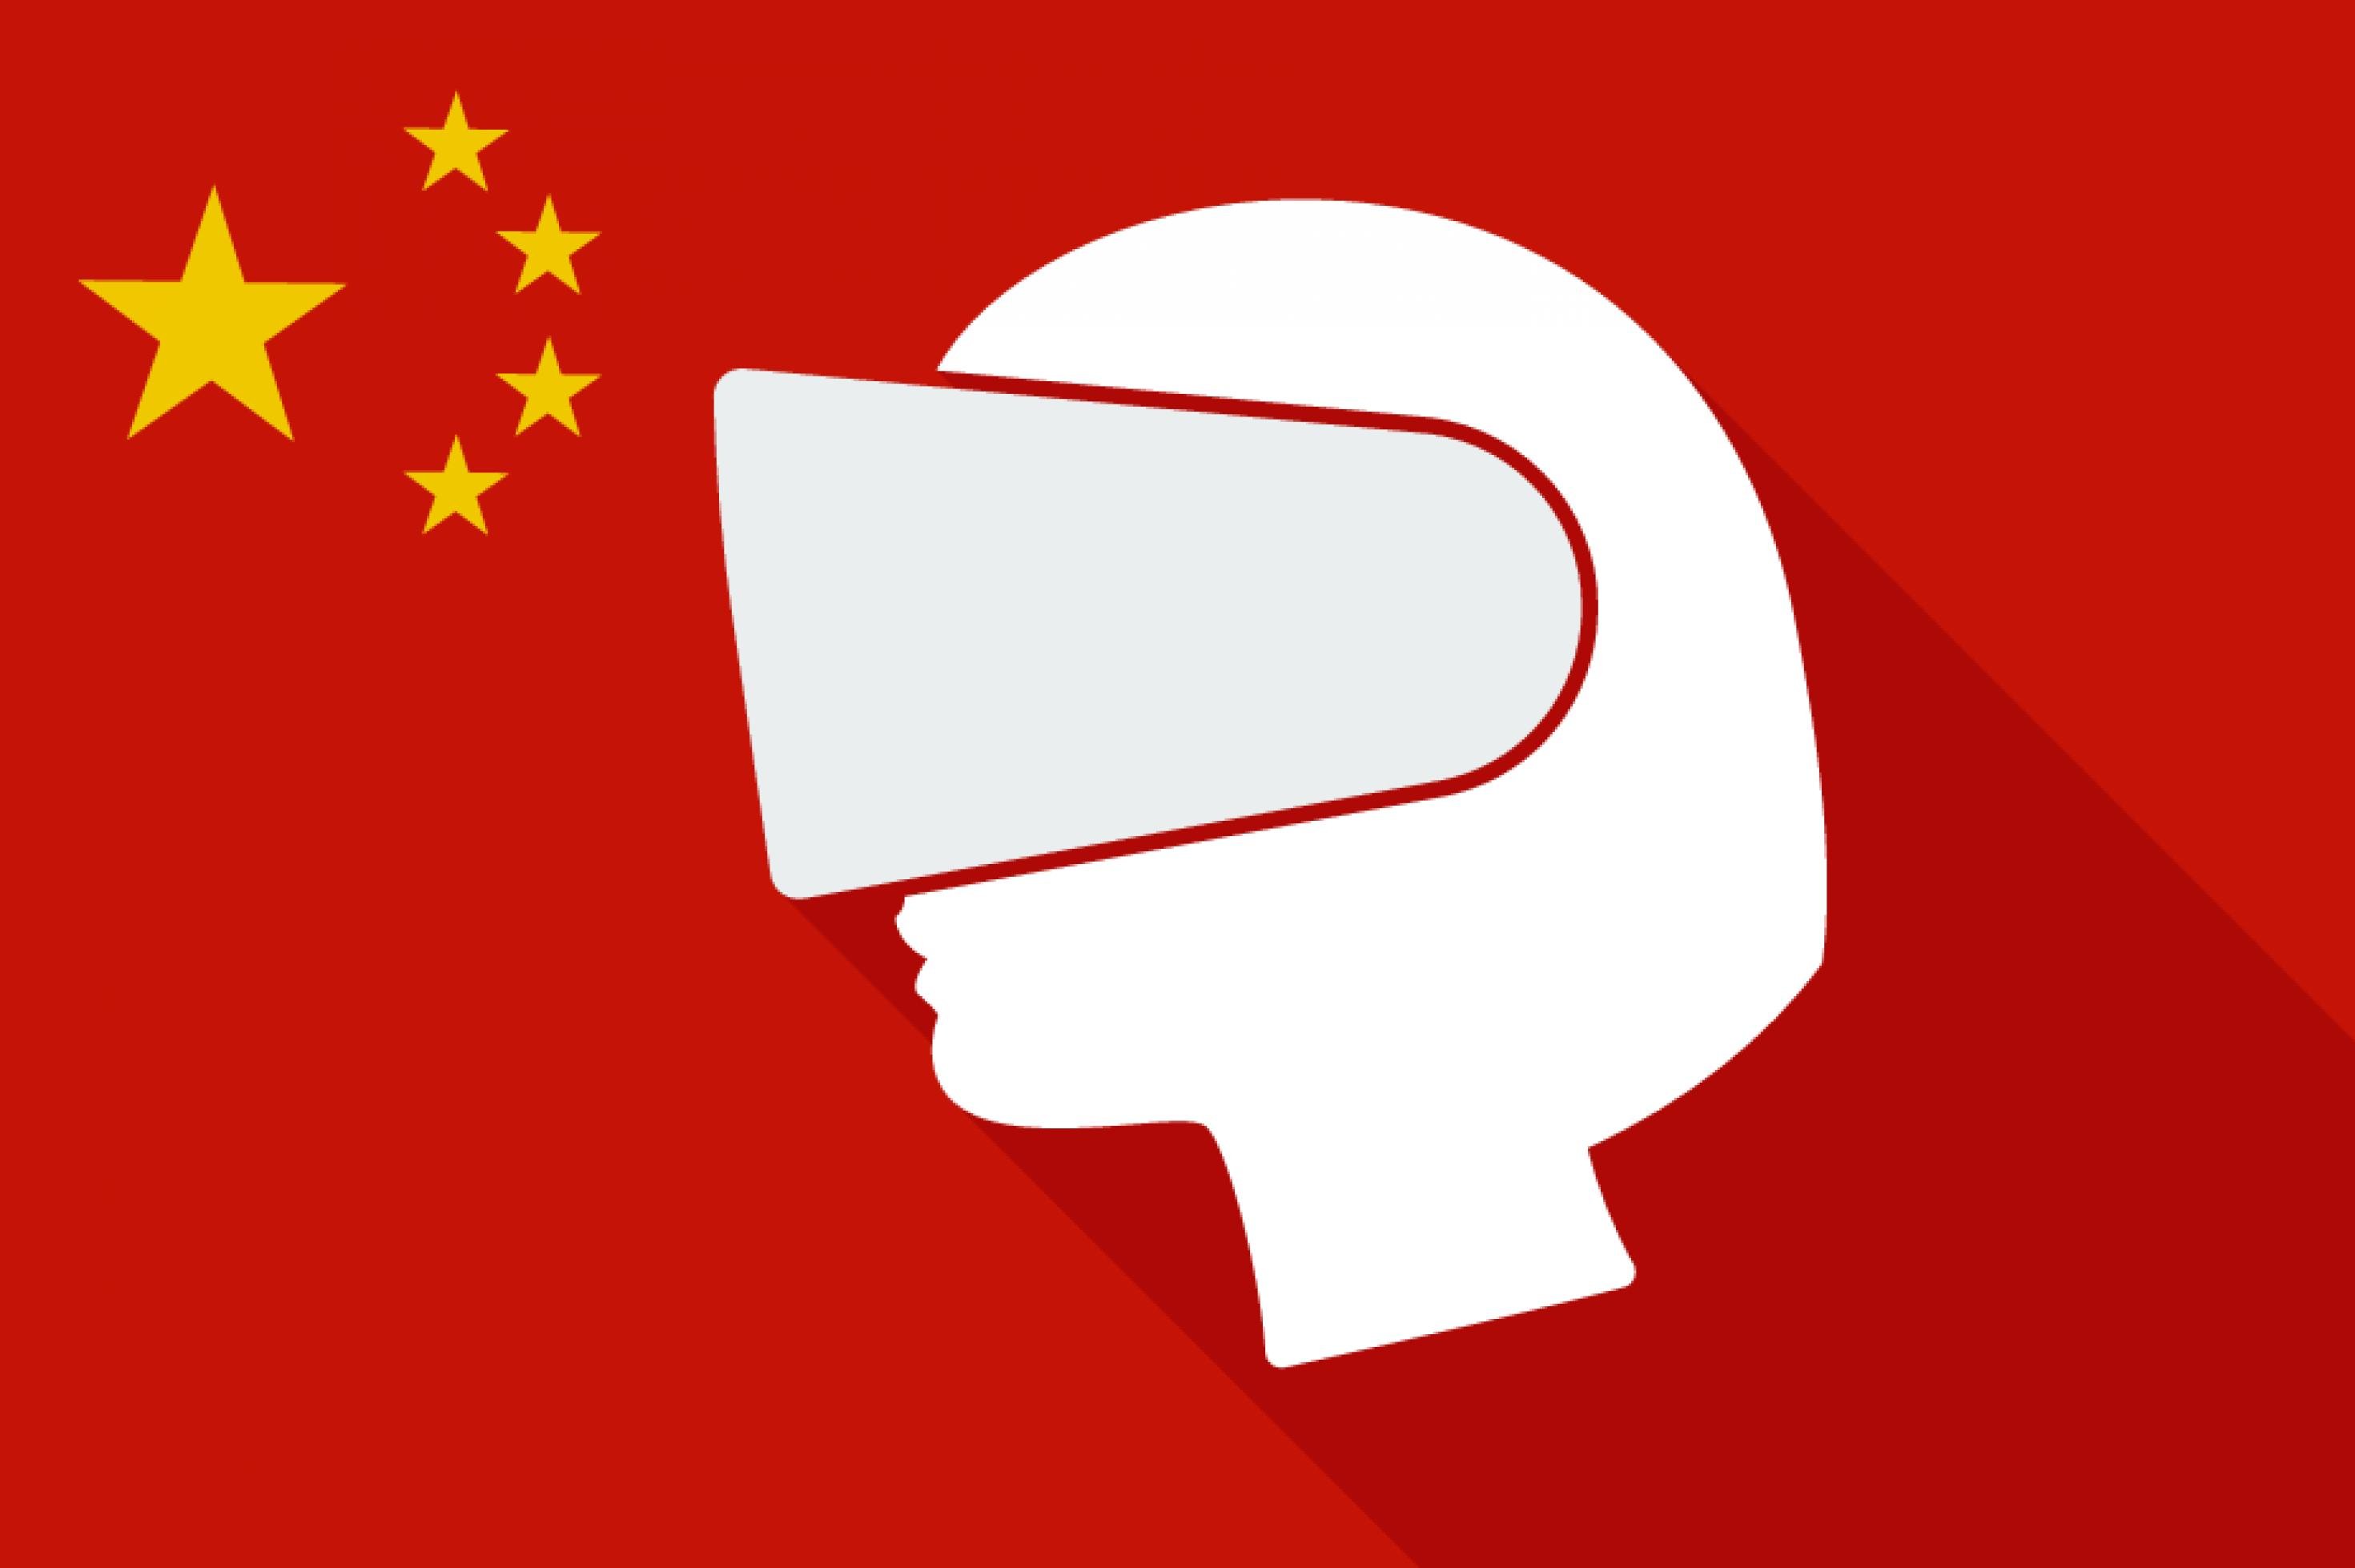 Symbolbild: Chinesische Flagge mit dem weißen Umriss eines Kopfes im Profil, der eine Virtual-Reality-Brille trägt.